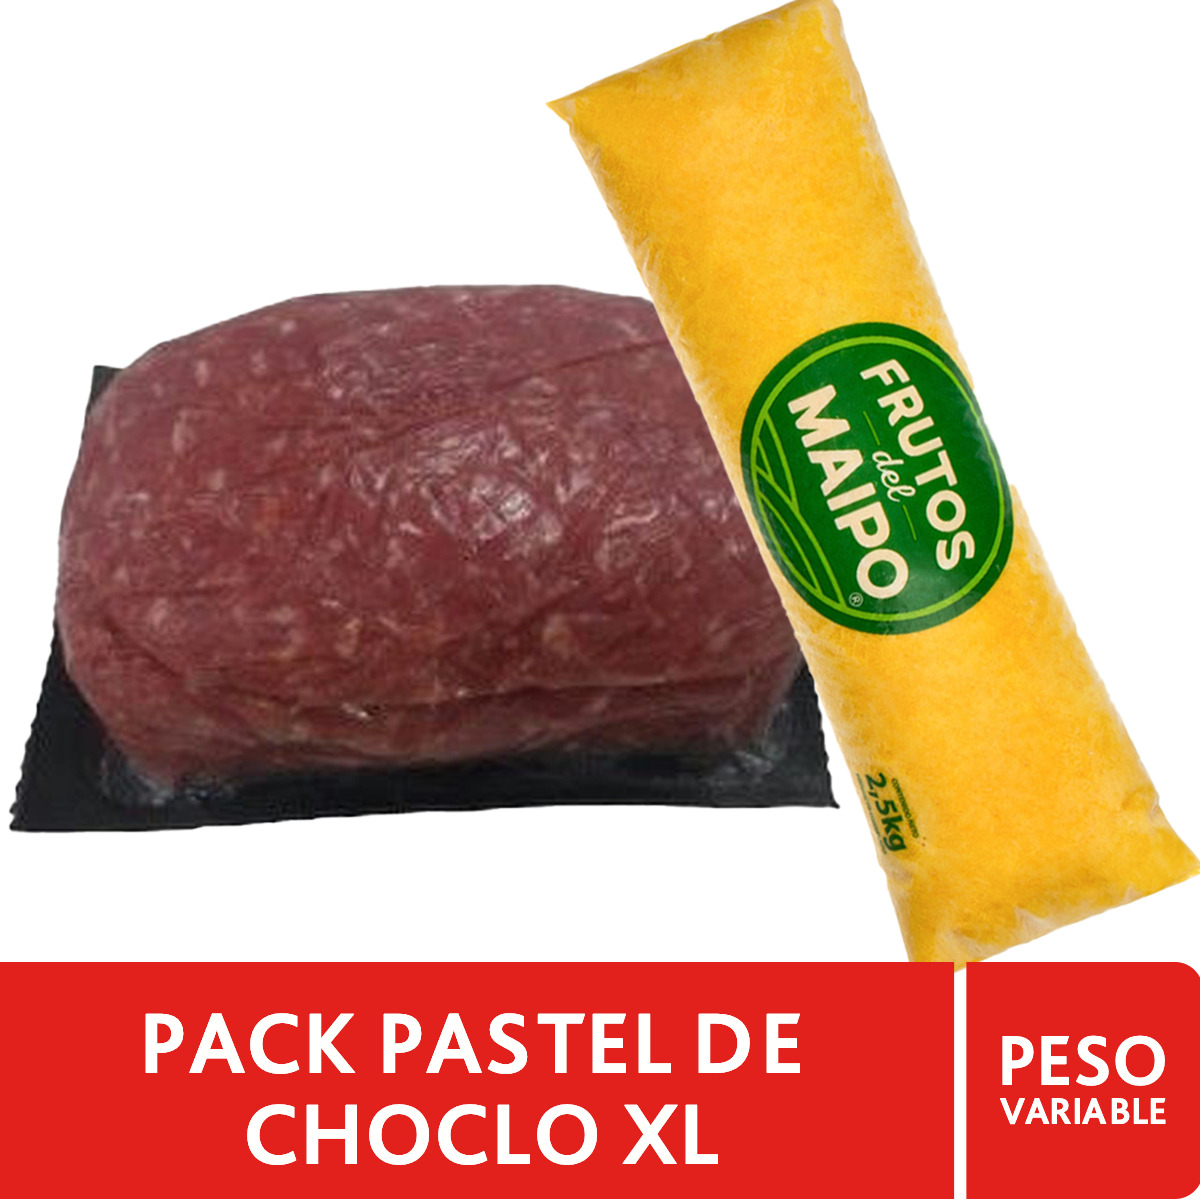 Pack Pastel de Choclo XL